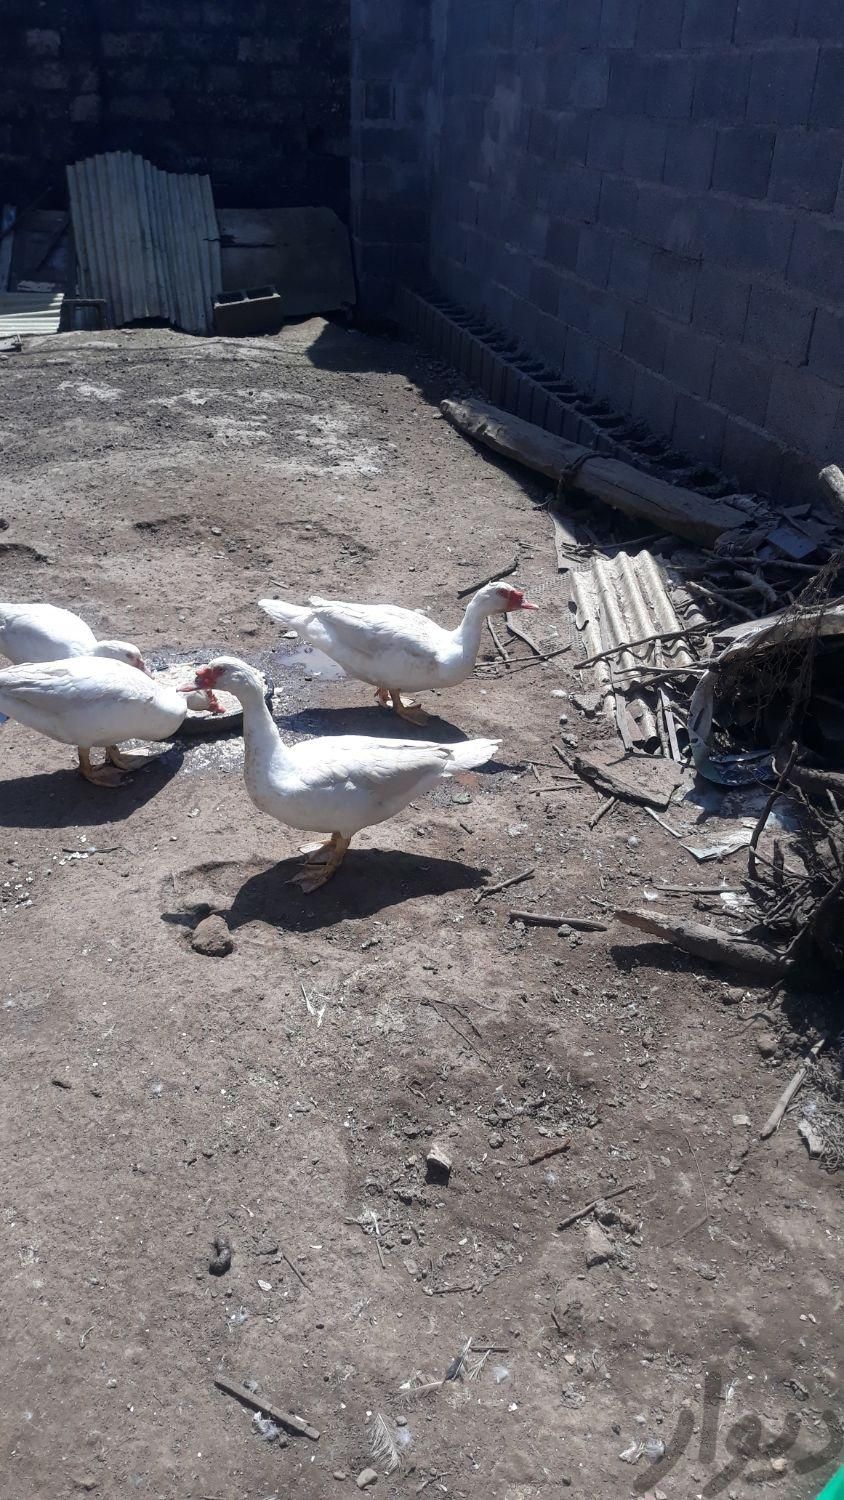 دو عدد اردک اسراییلی نر درشت تمام سفید|حیوانات مزرعه|رشت, بازار|دیوار